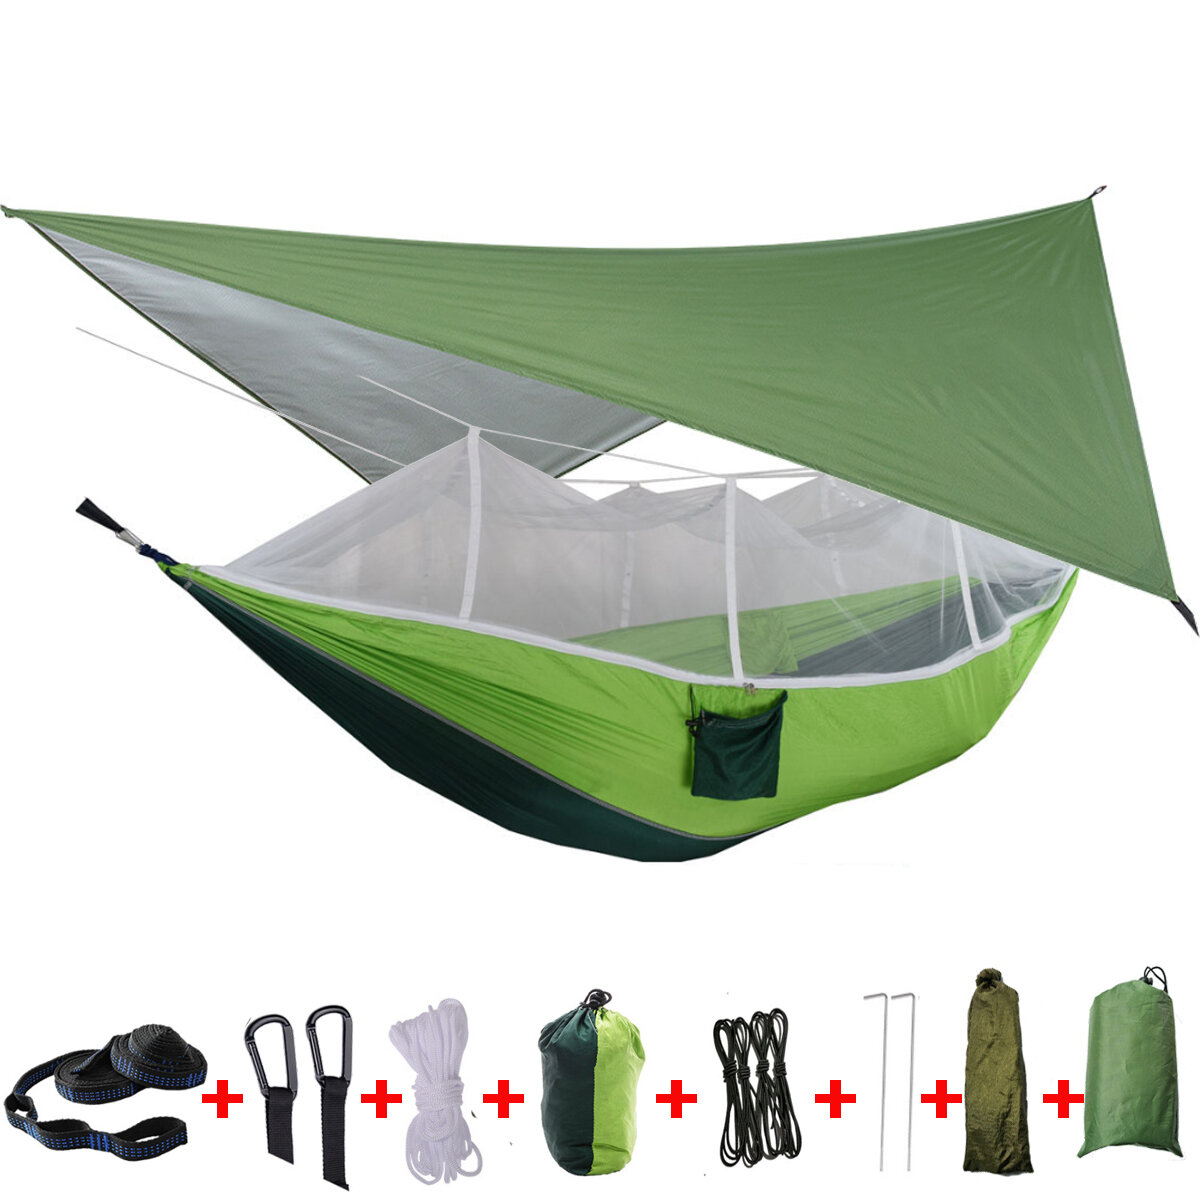 Rede de acampamento para 2 pessoas IPRee® com mosquiteiro, capa de chuva e cama dupla suspensa para viagens ao ar livre